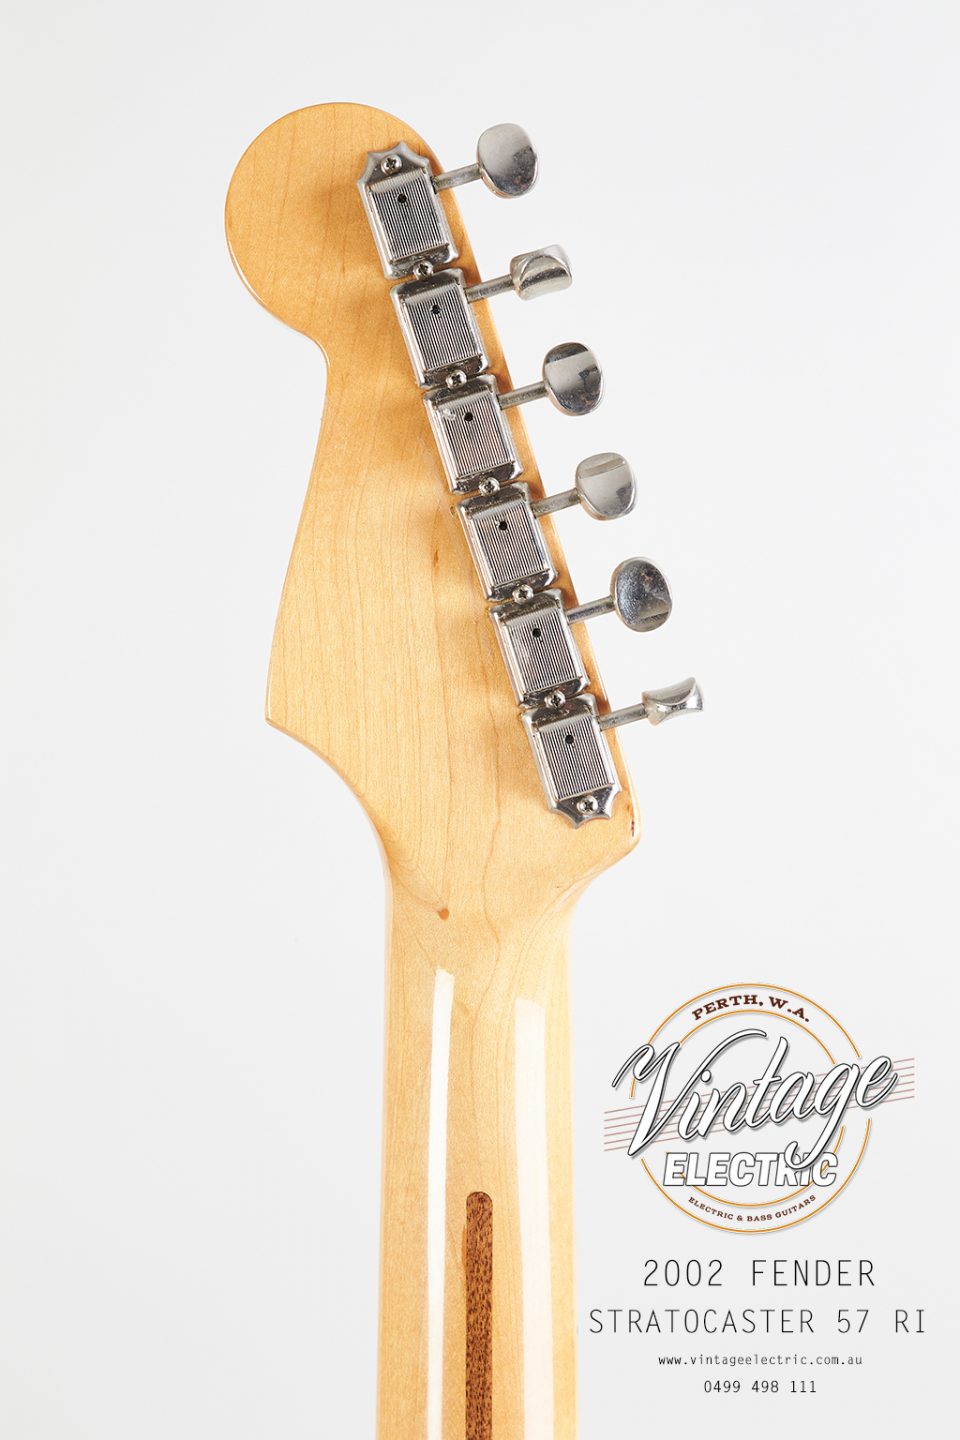 2002 Fender Stratocaster Back of Headstock